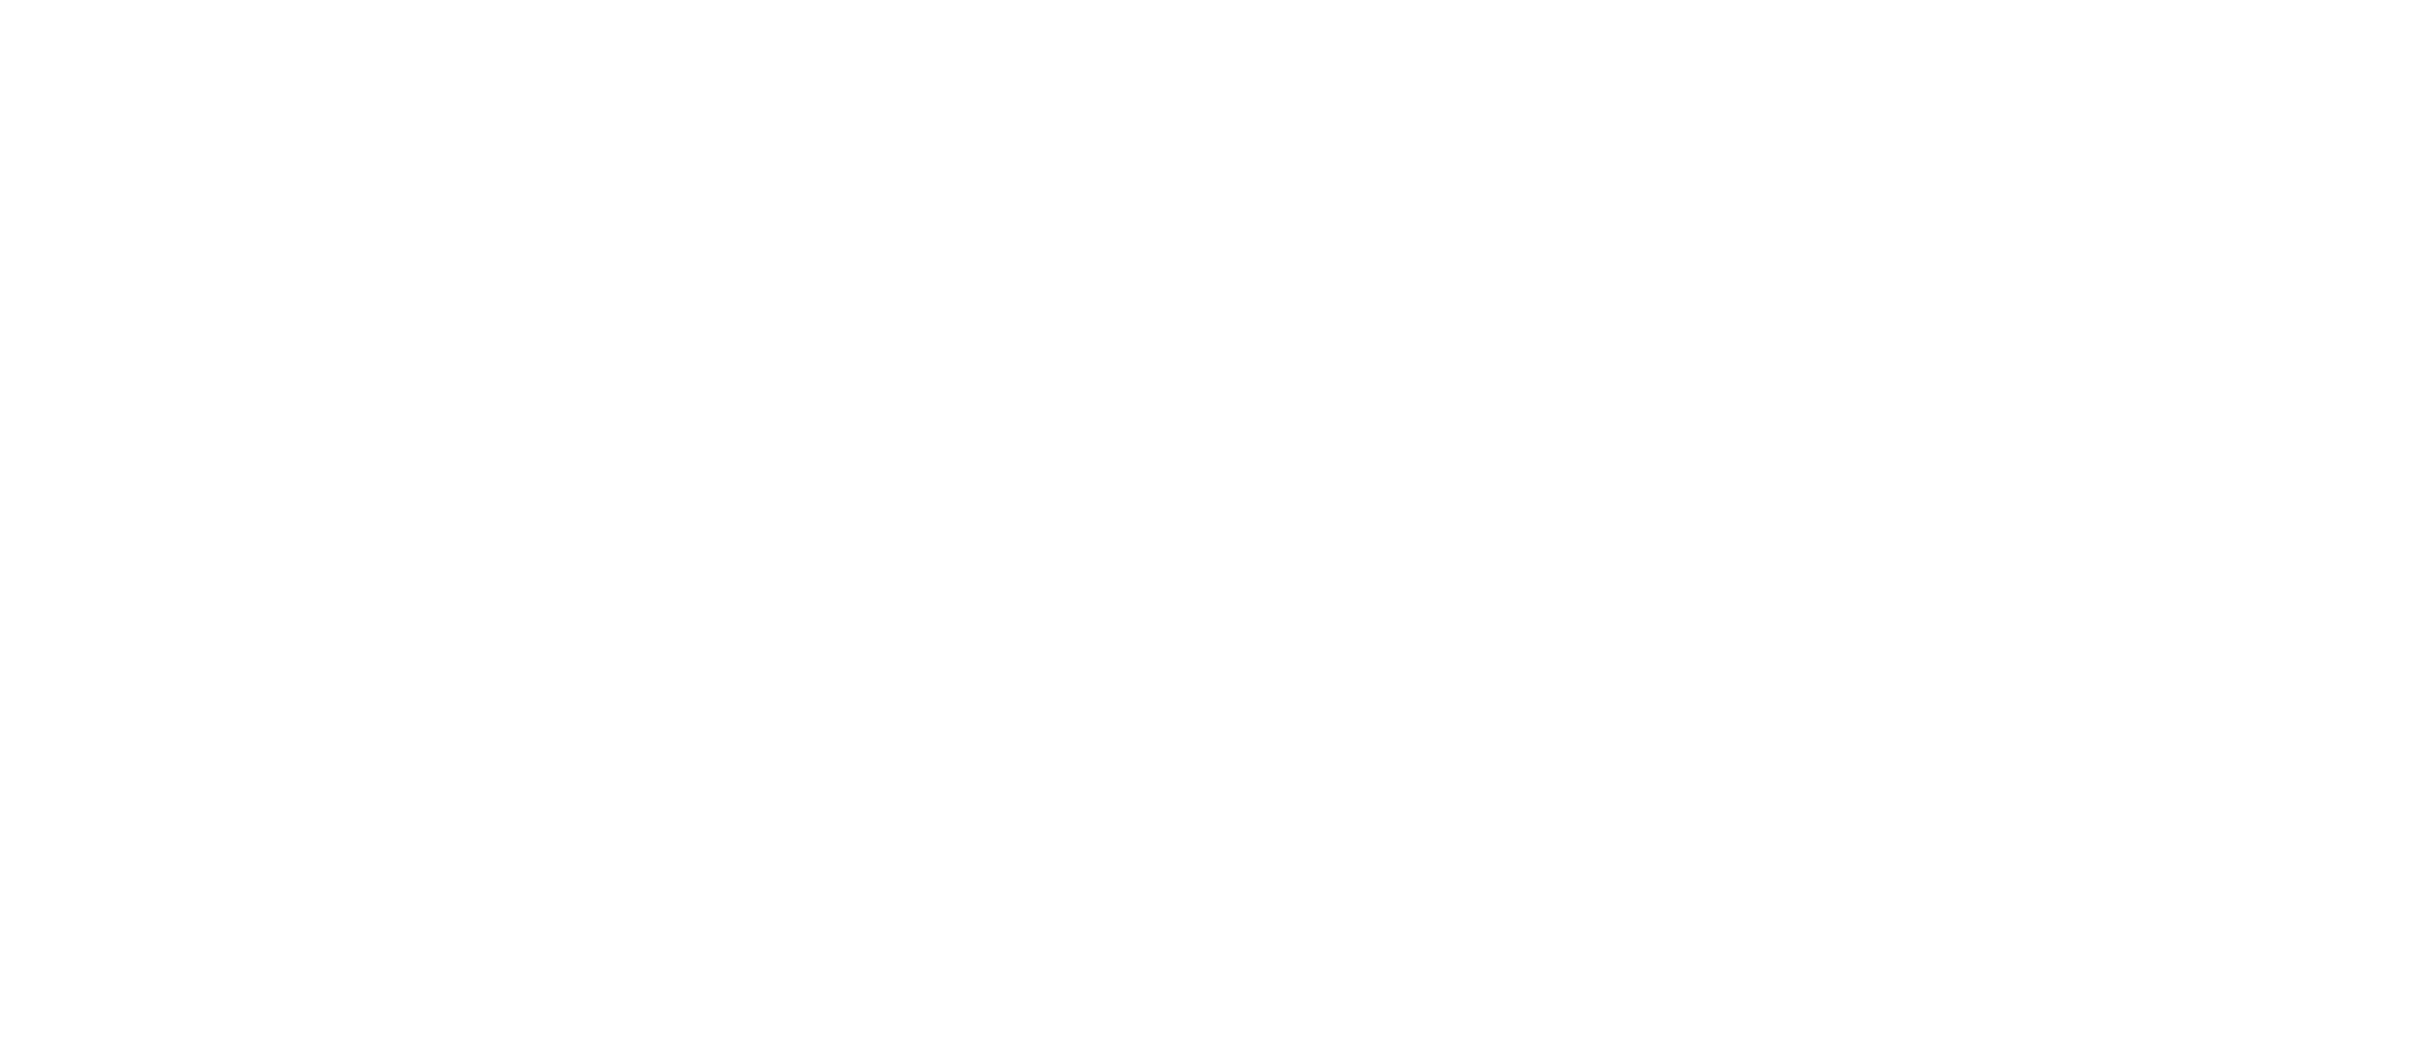 Jordan's logo